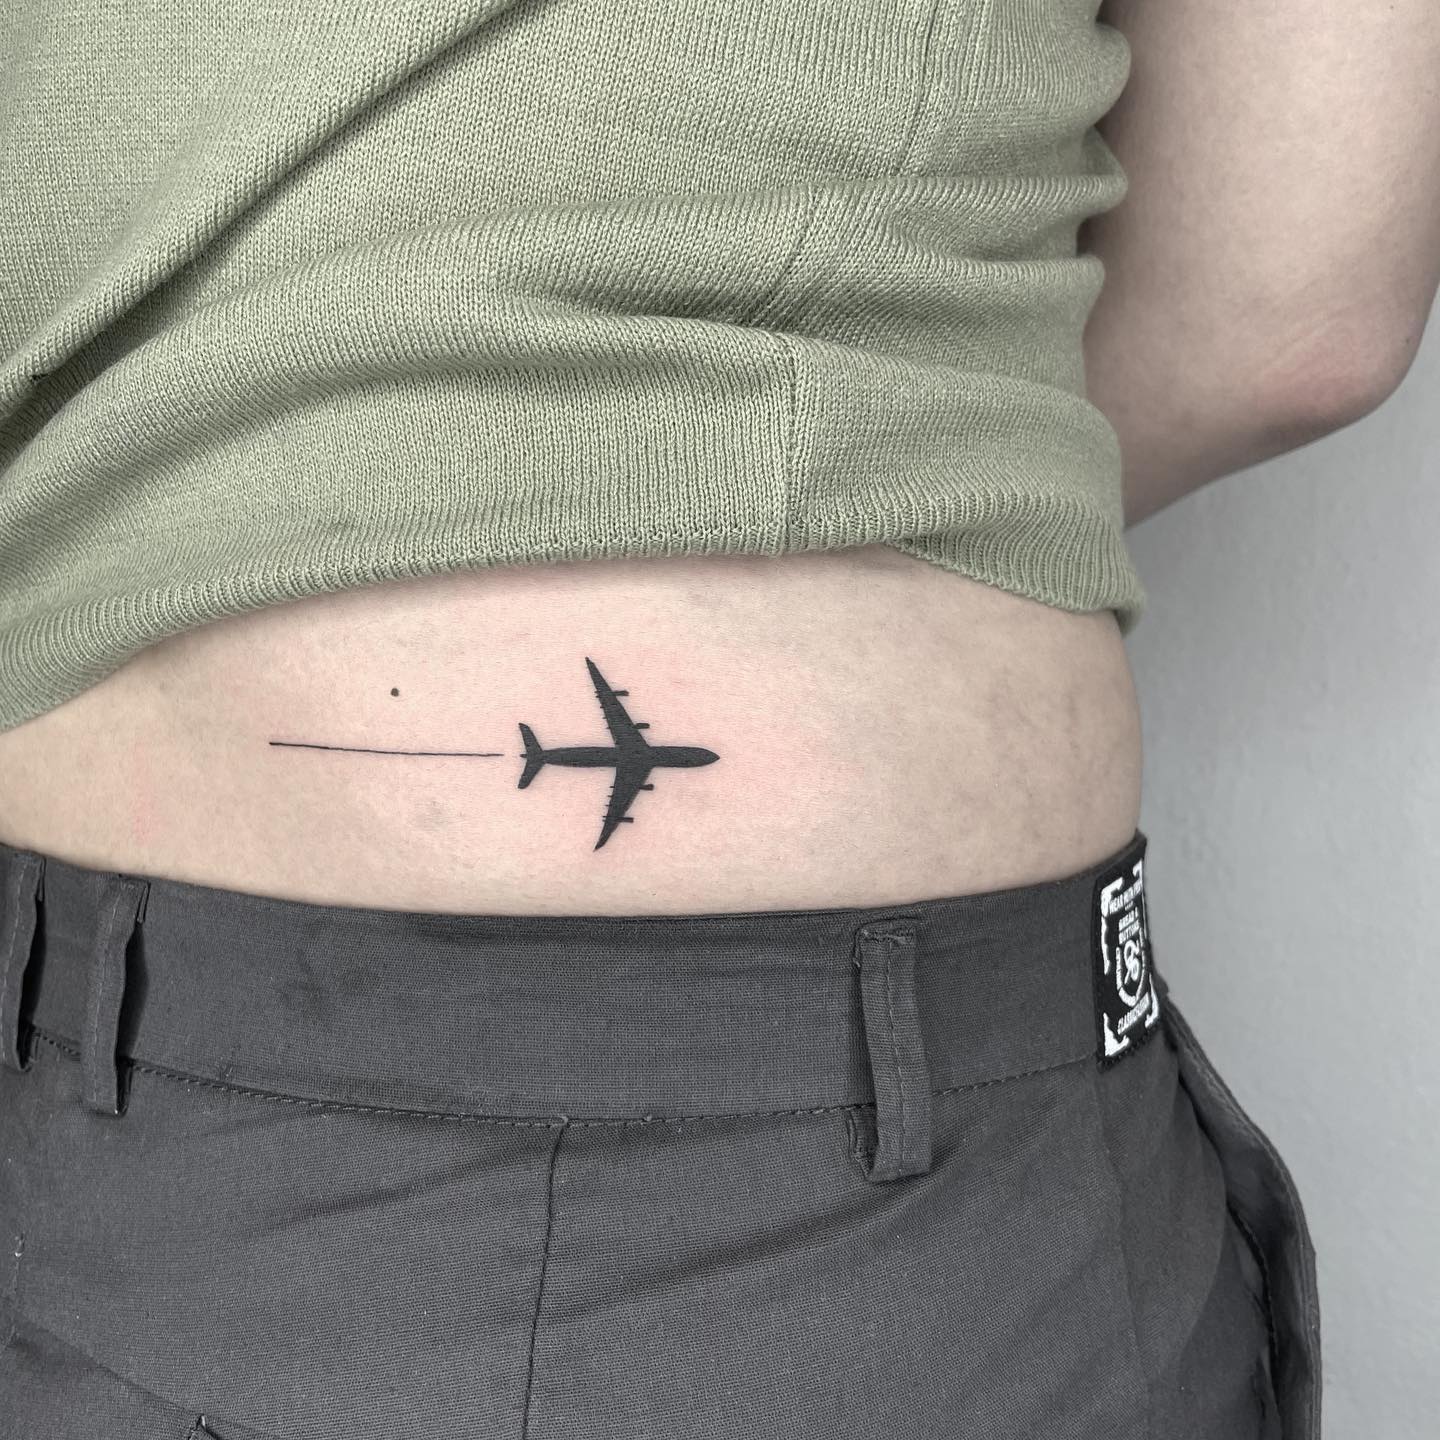 Tatuaje de un avión 4